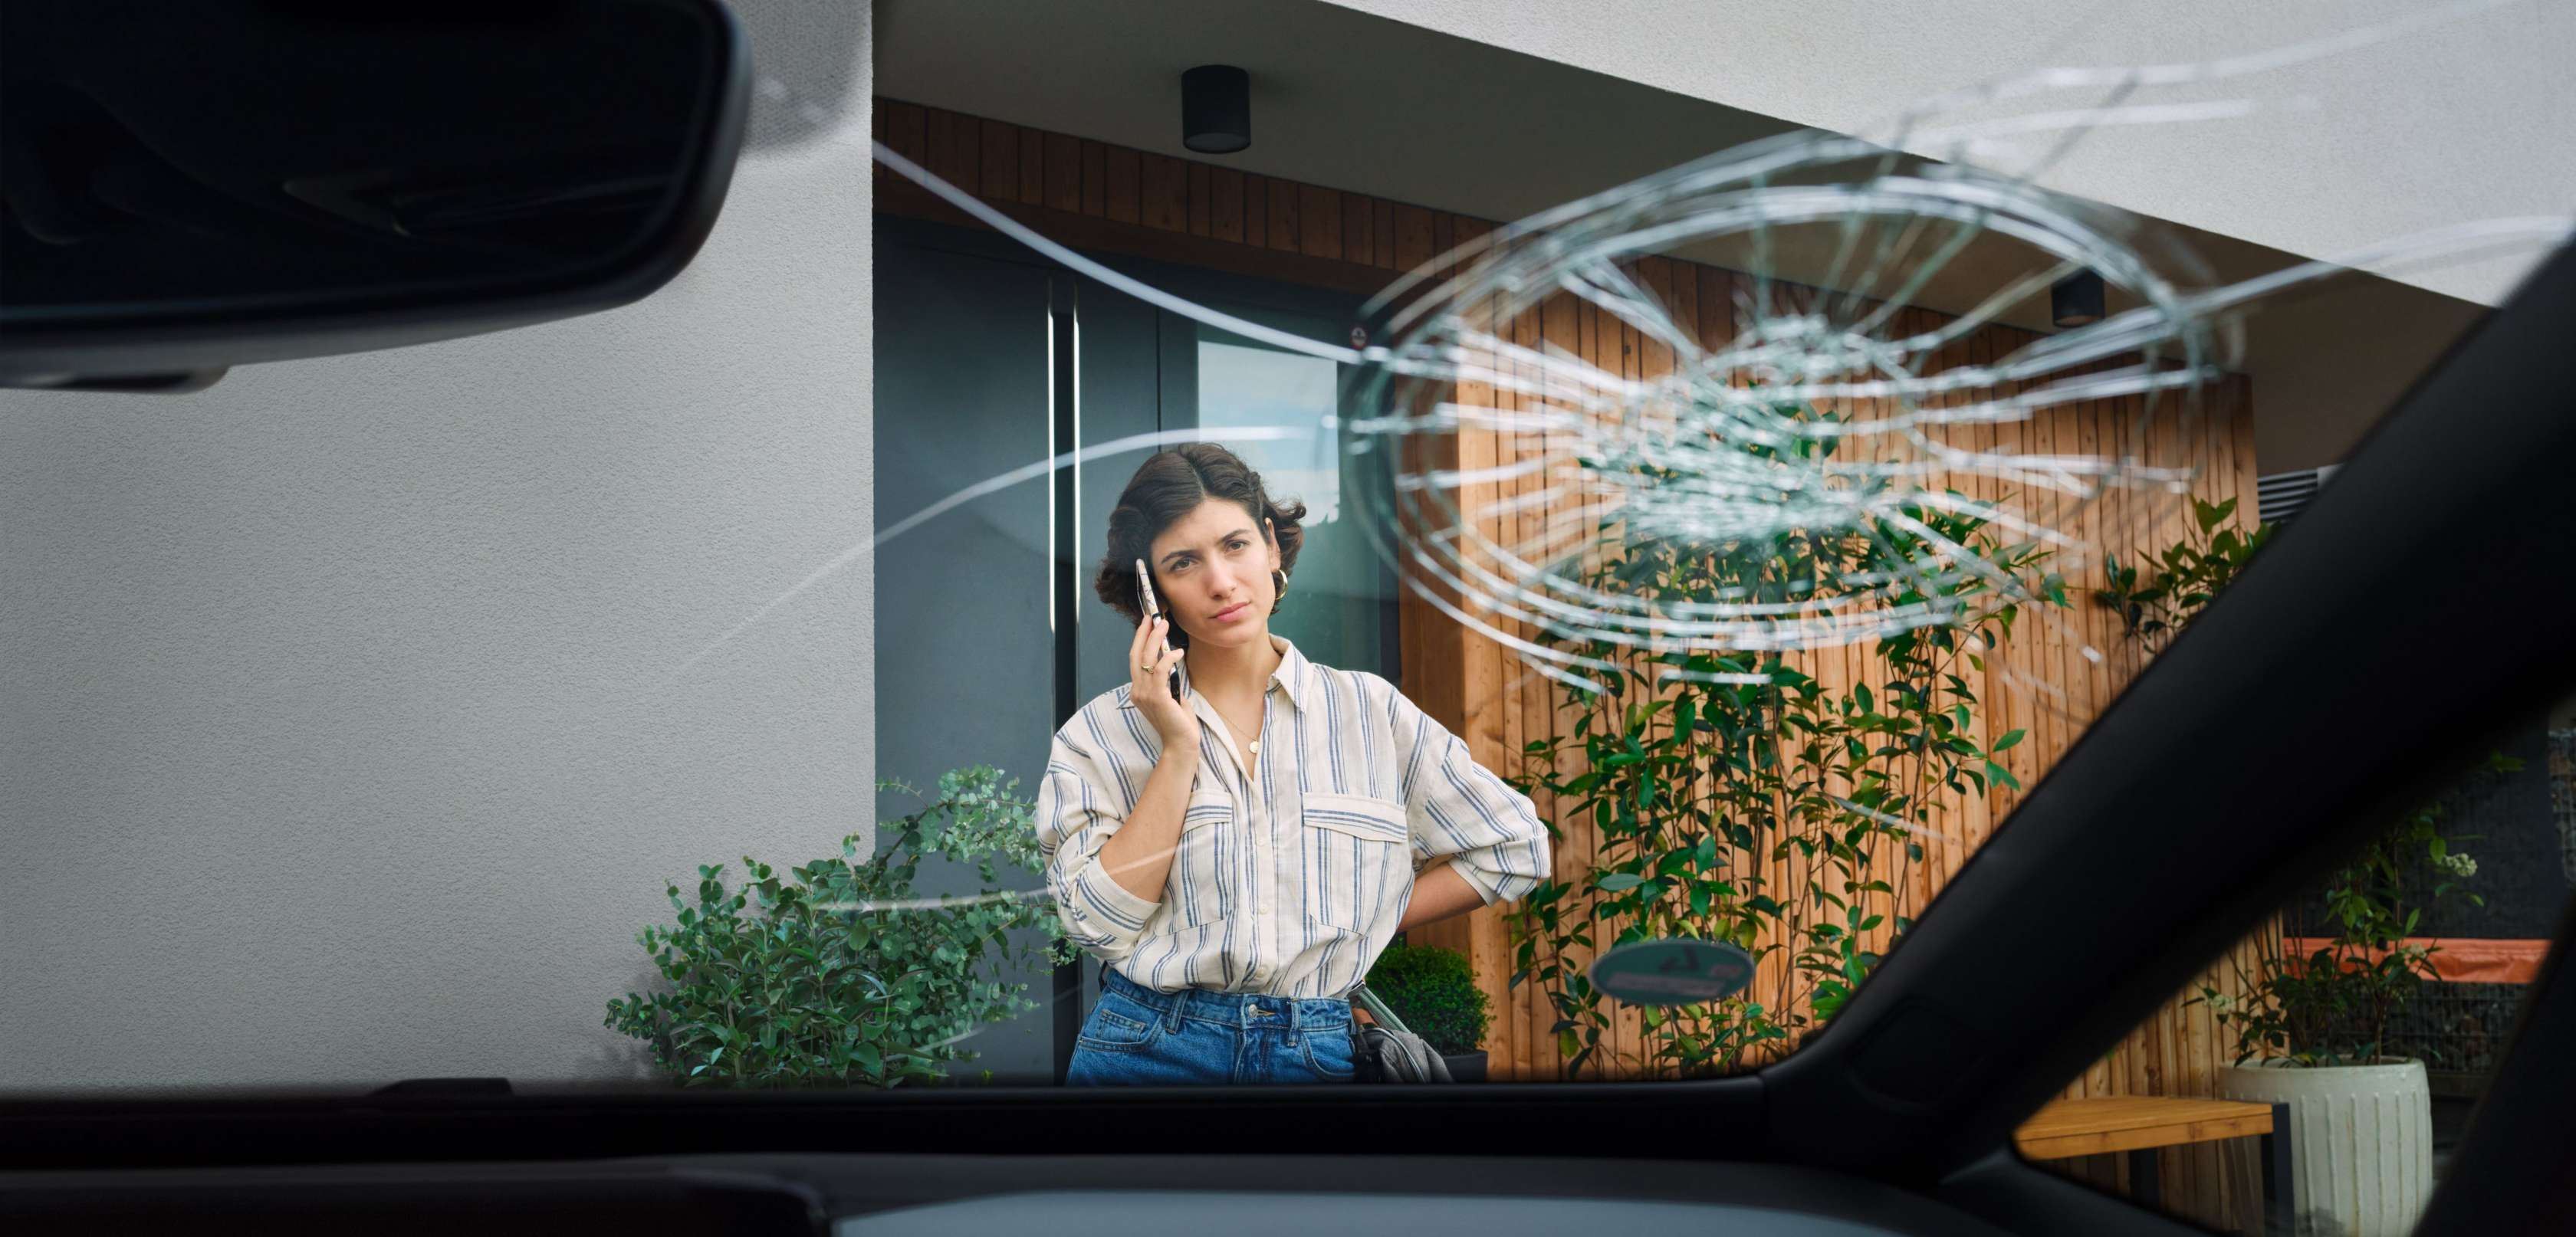 Fröhliche Frau streckt ihre Hand aus dem Autofenster des Abschleppwagens